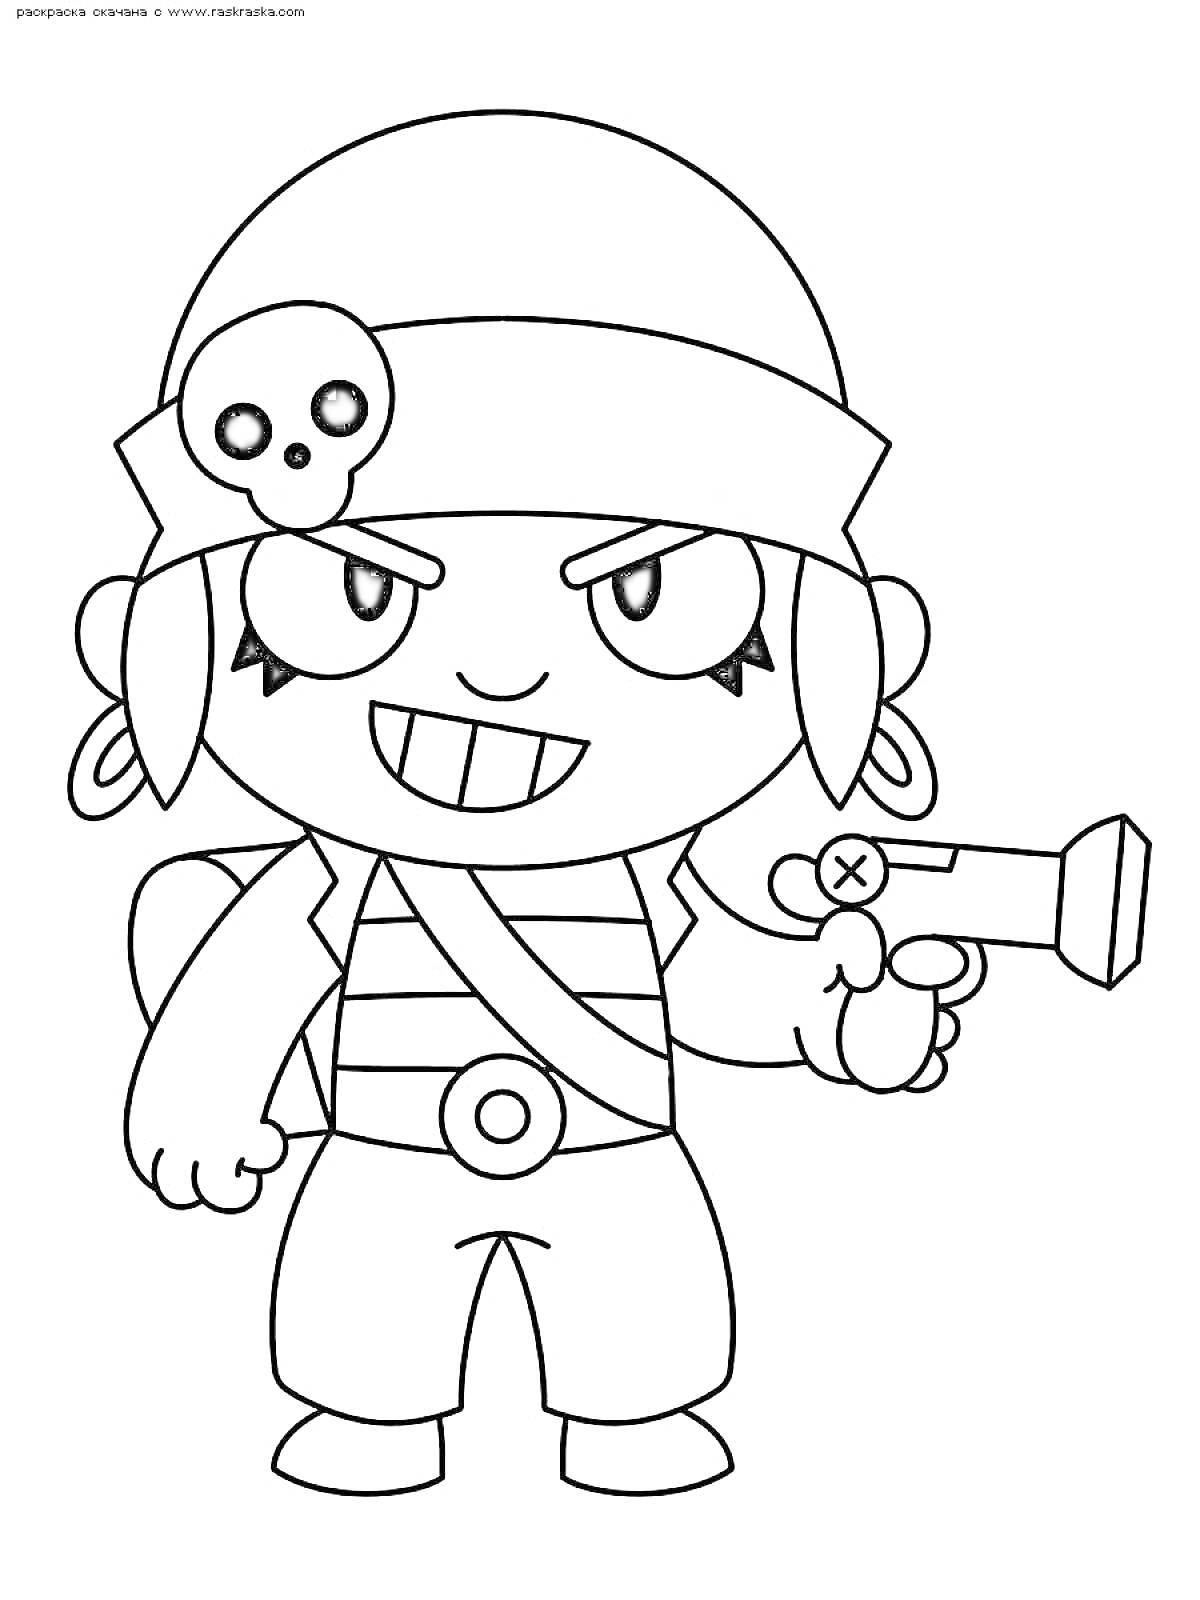 Персонаж Честер из Brawl Stars в пиратском костюме с повязкой на голове, пистолетом, черепом на повязке и рюкзаком